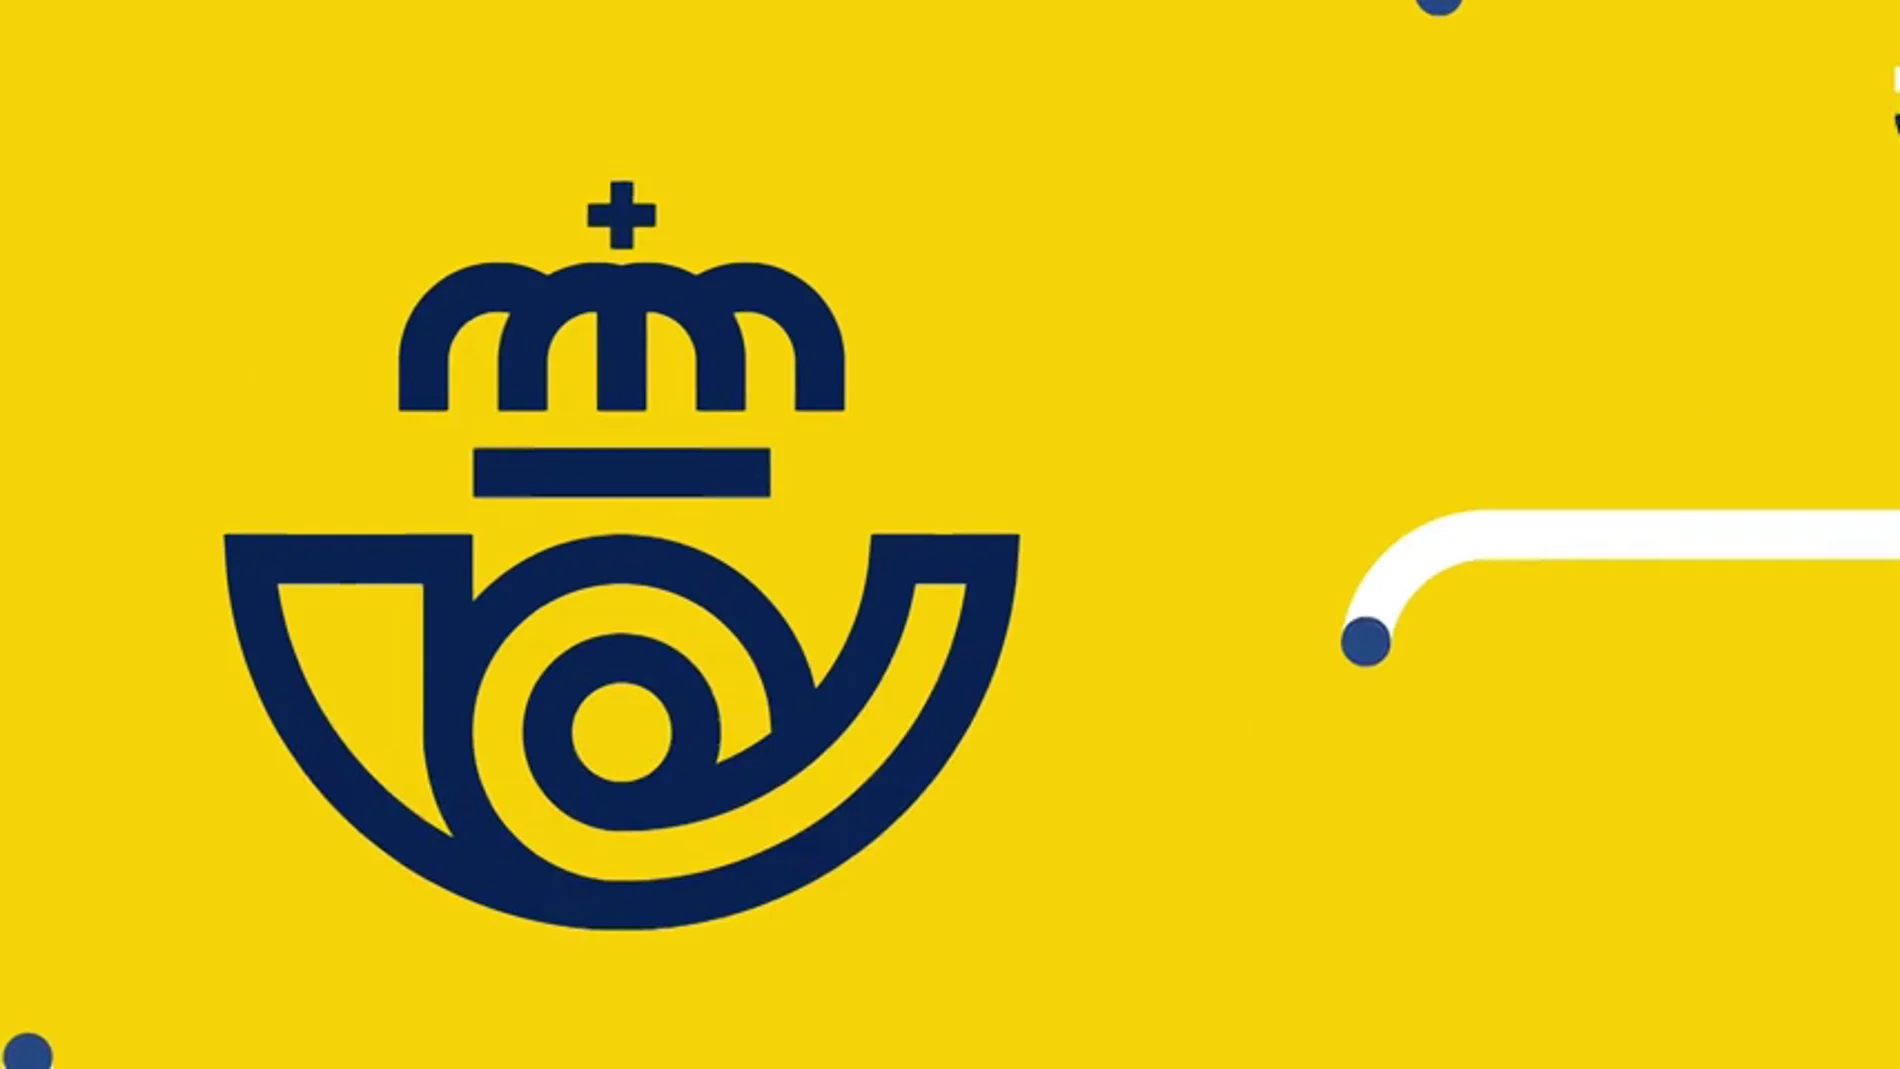 Correos lanza un trap para promocionar su nuevo logo: "Cruz, doble eme, raya, espiral ¡azul! "